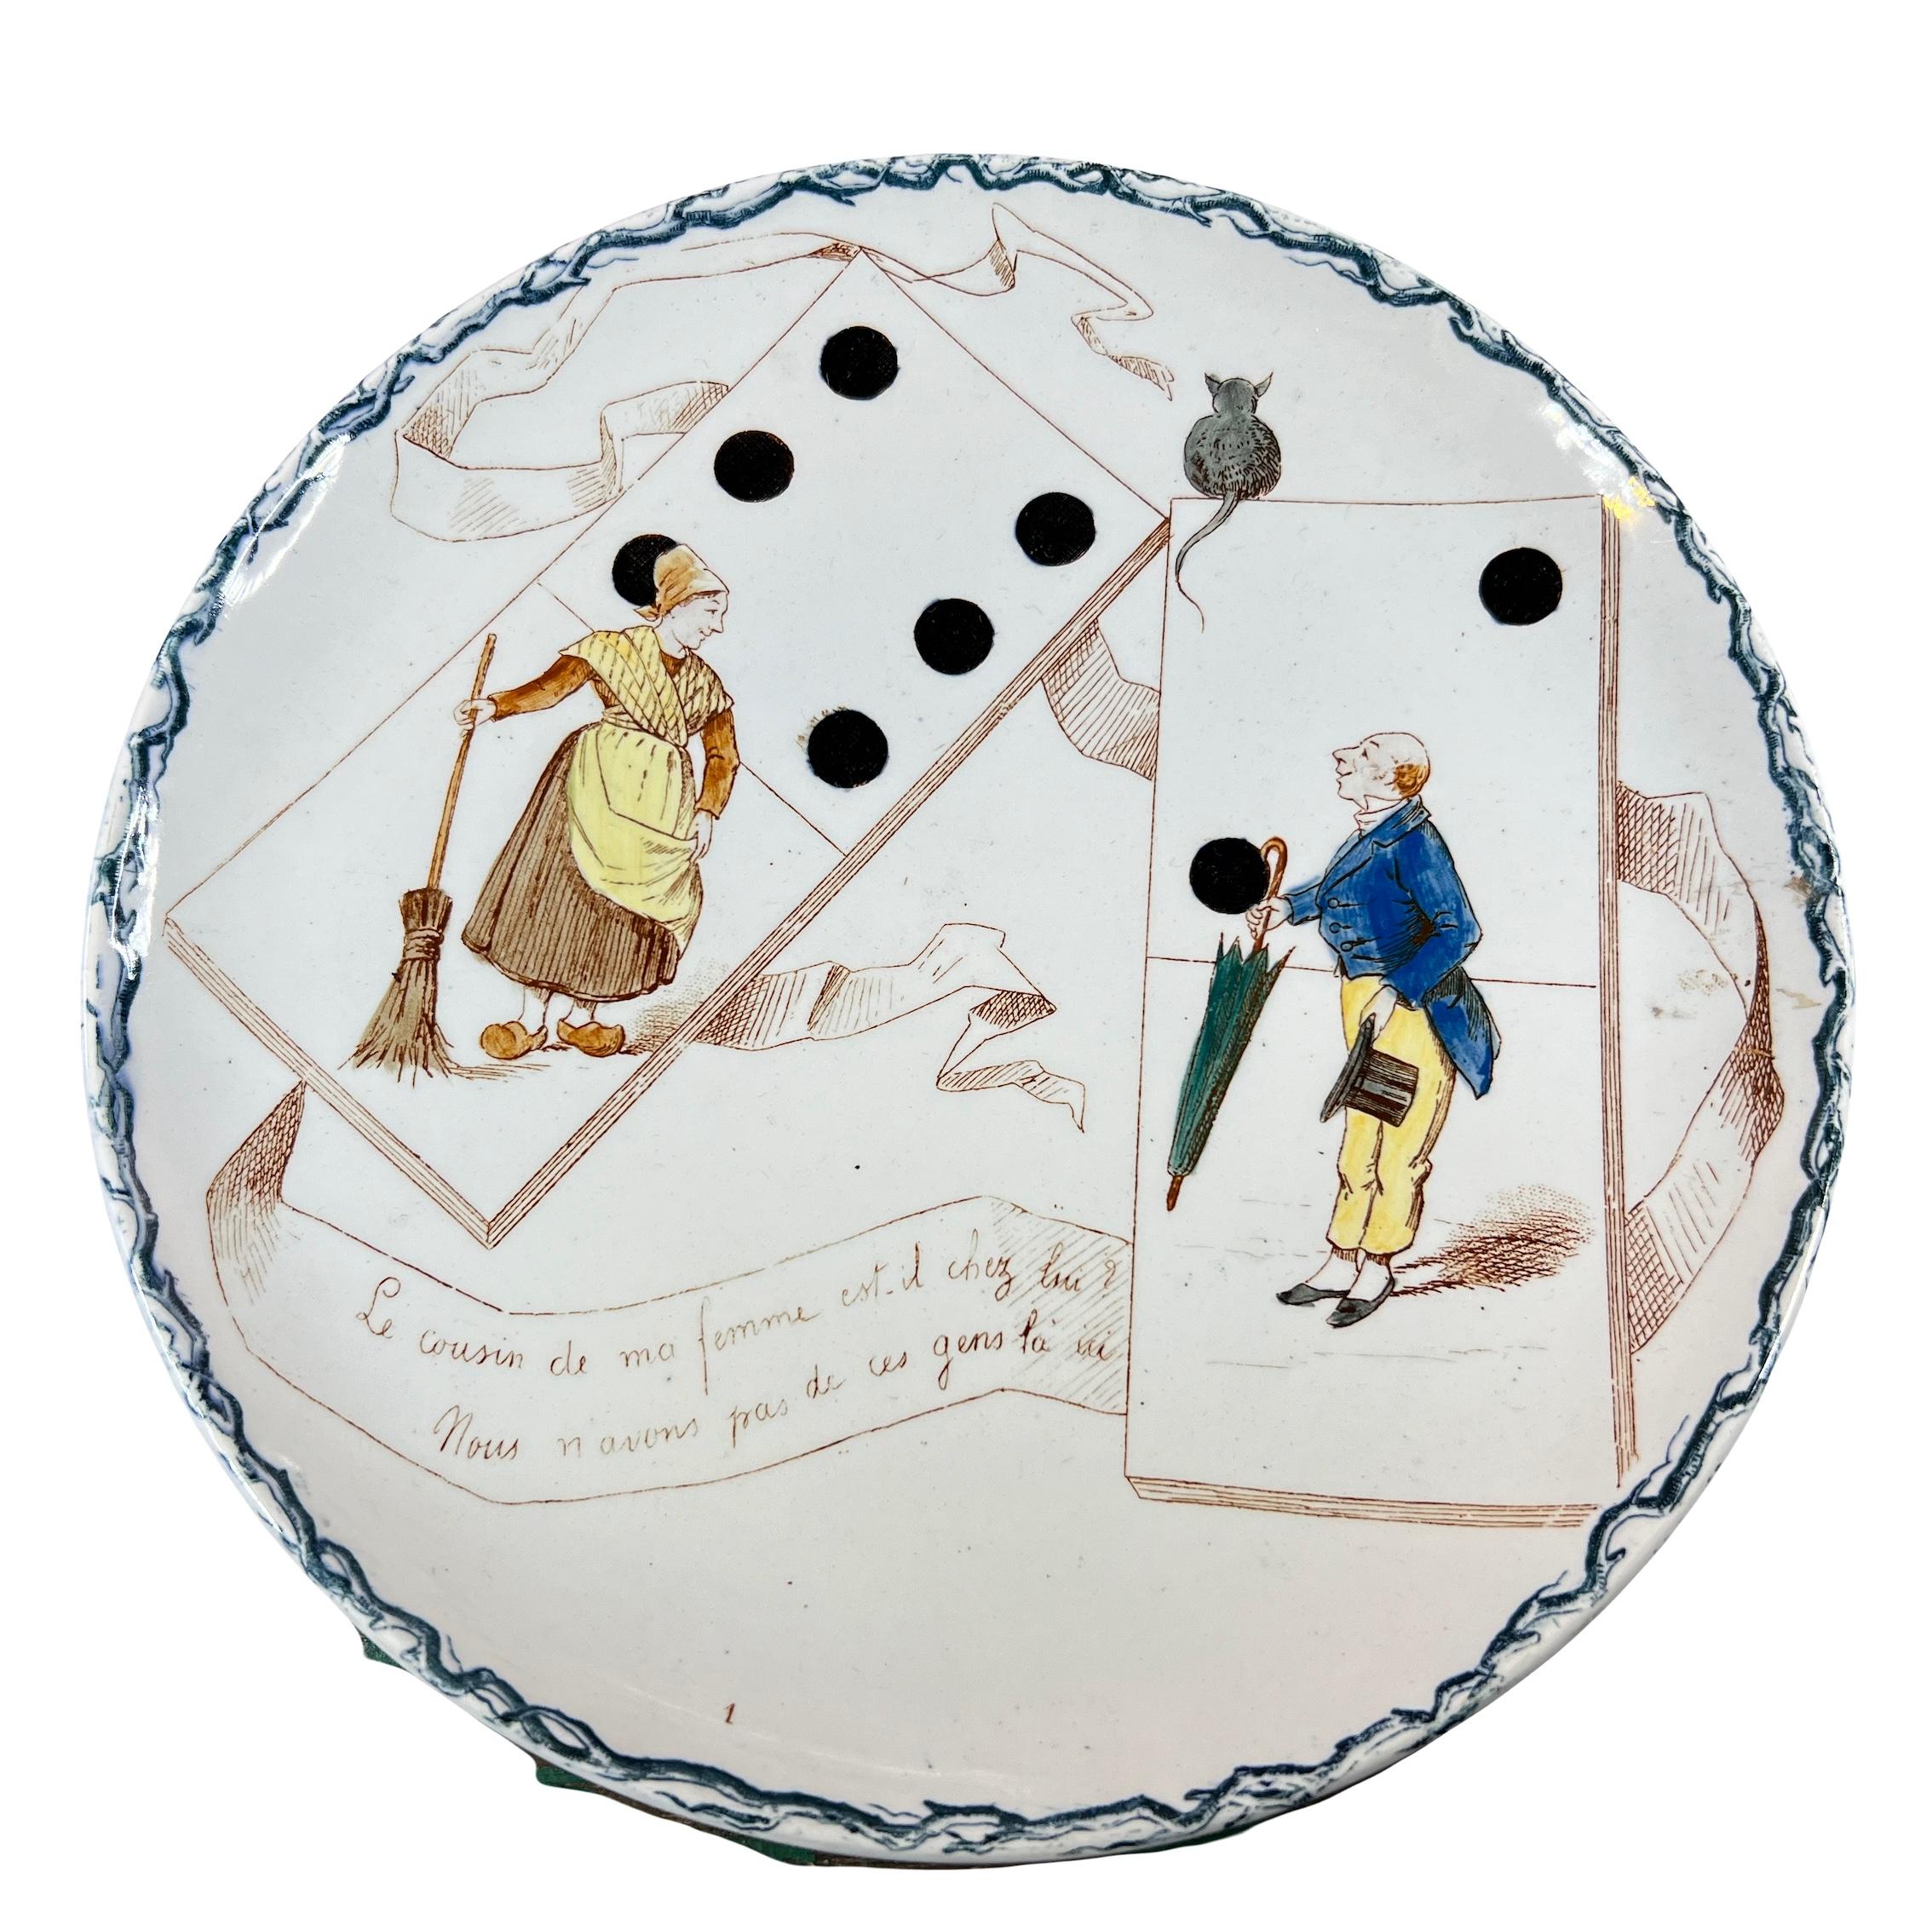 Ensemble von 2 humoristischen Assietten über das Thema der alten Spiele, die Dominosteine, aus der französischen Manufaktur von Creil Montereau aus dem Jahr 1890.

Auf dem Tisch sehen wir eine Frau in einem Sabot, einen Balai in der Hauptrolle und